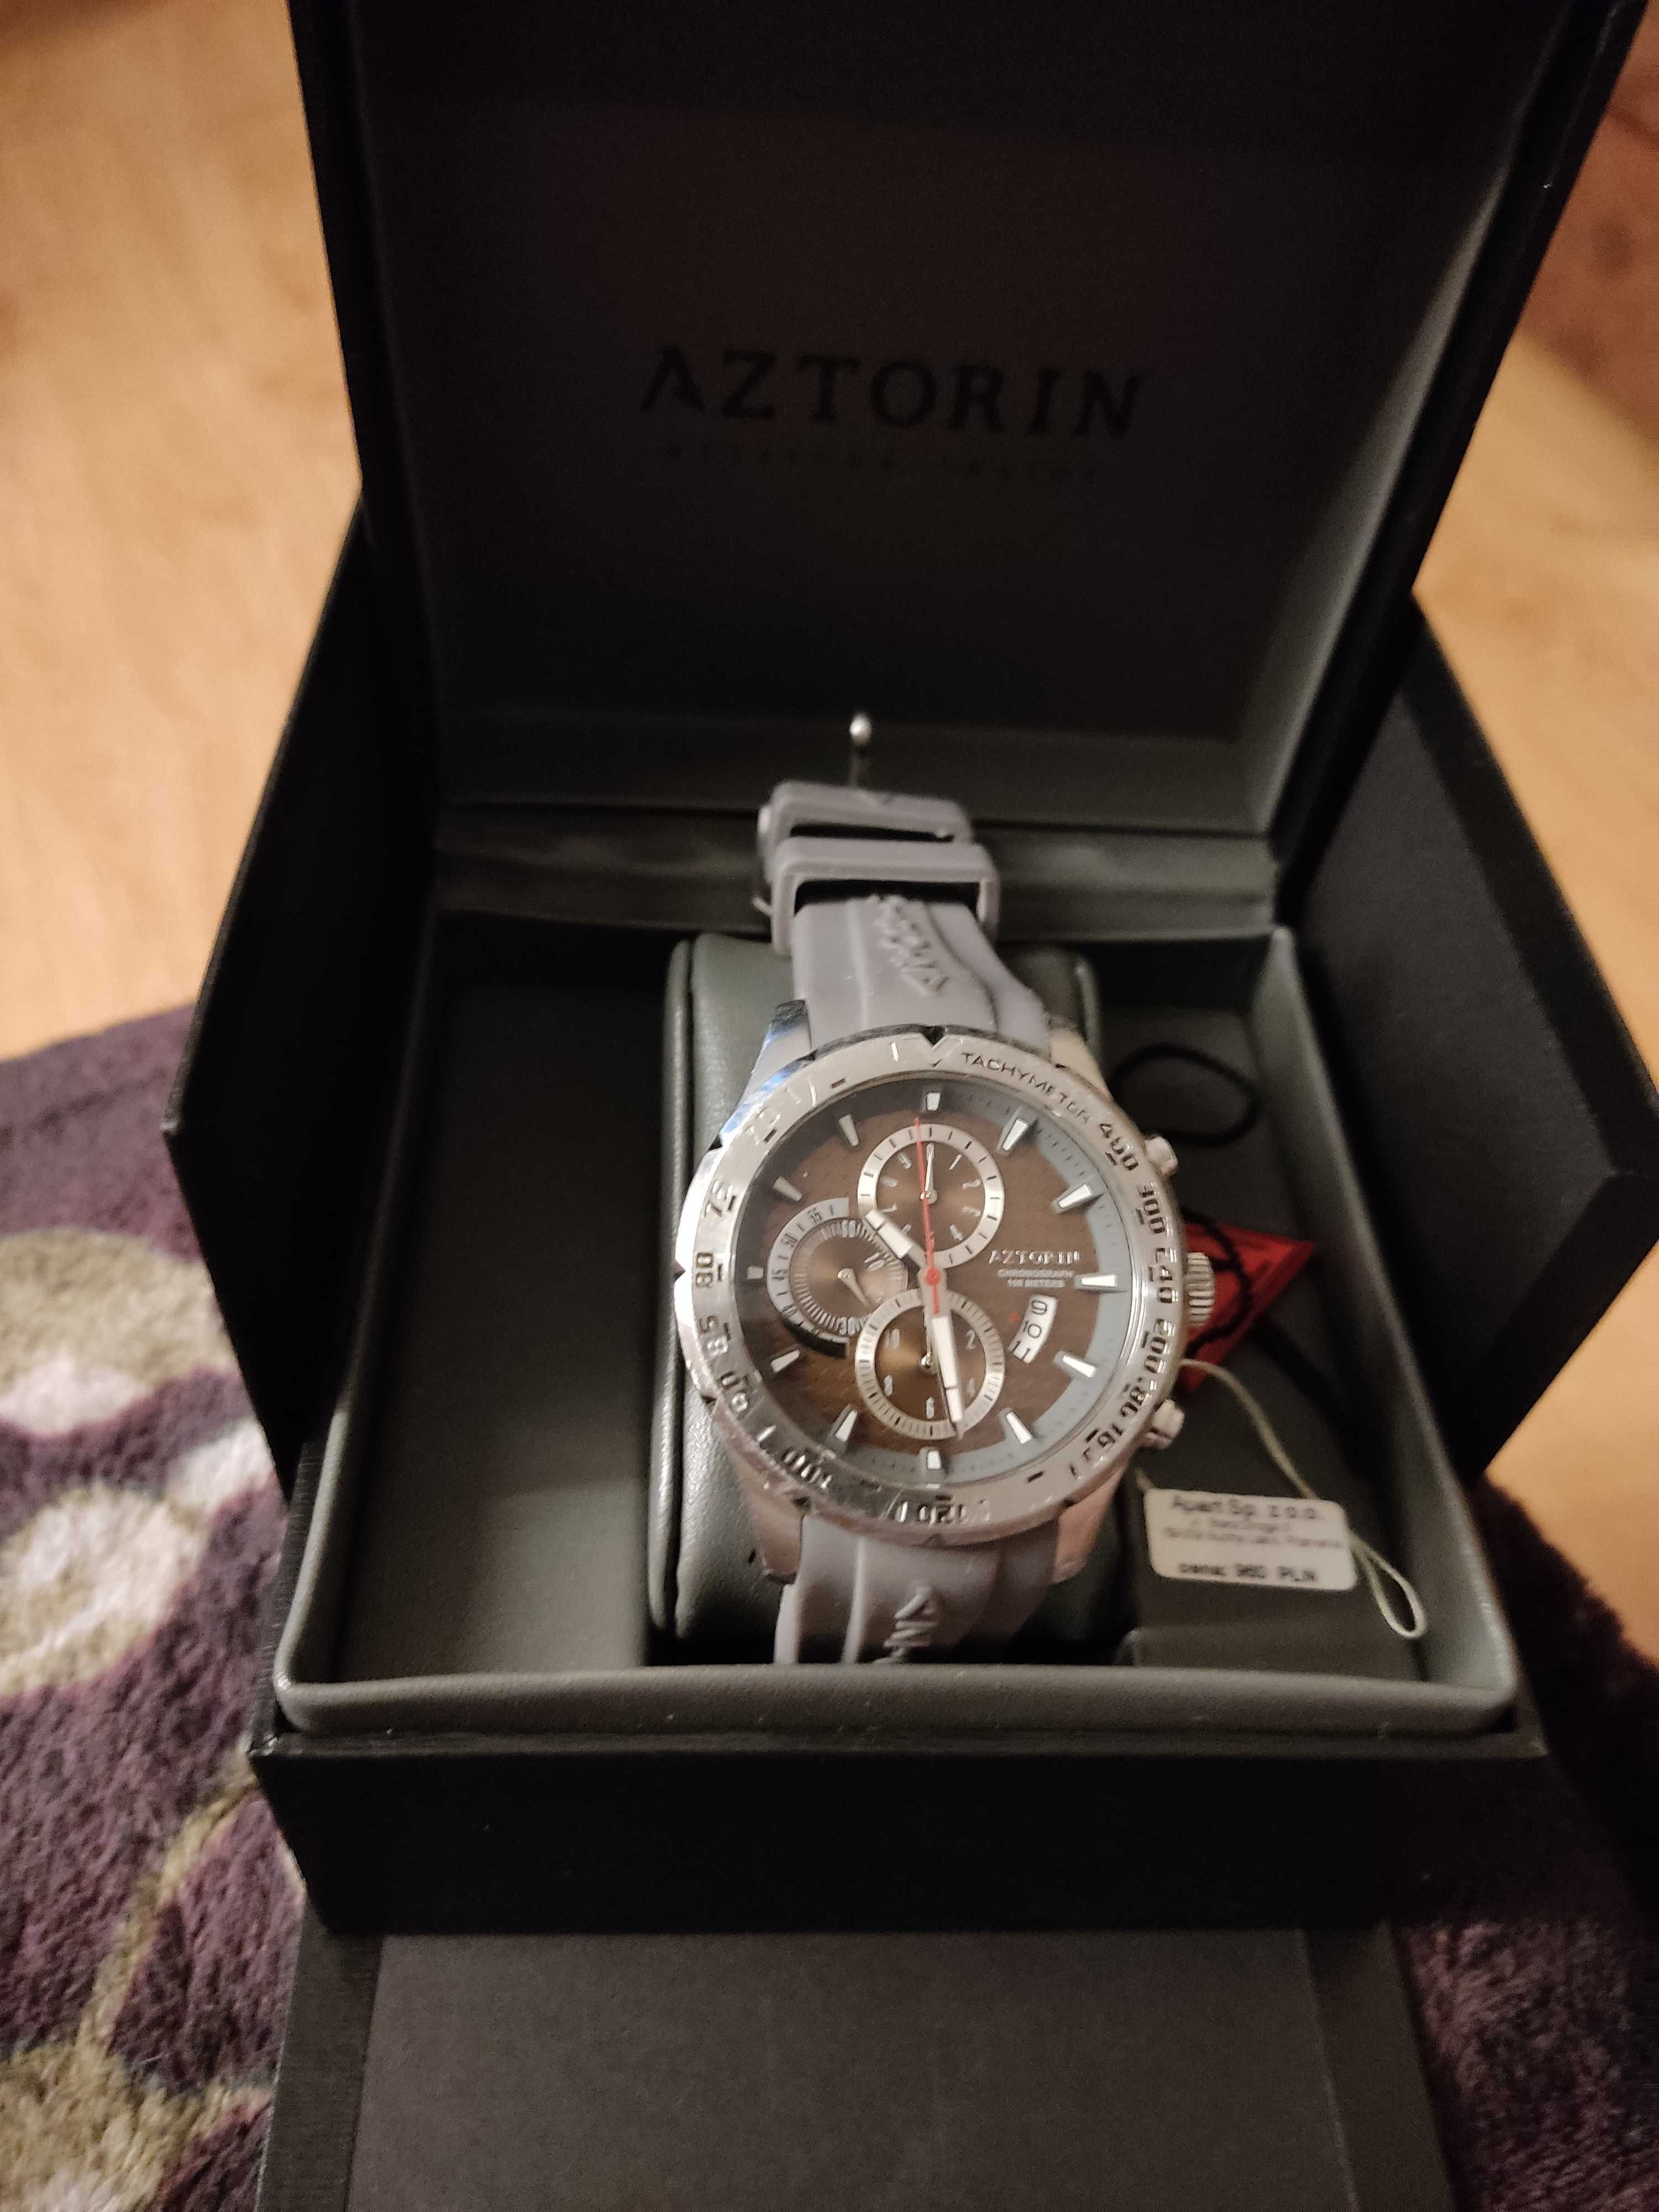 Zegarek Aztorin A037.G157 Sapphire. Stan bardzo dobry!